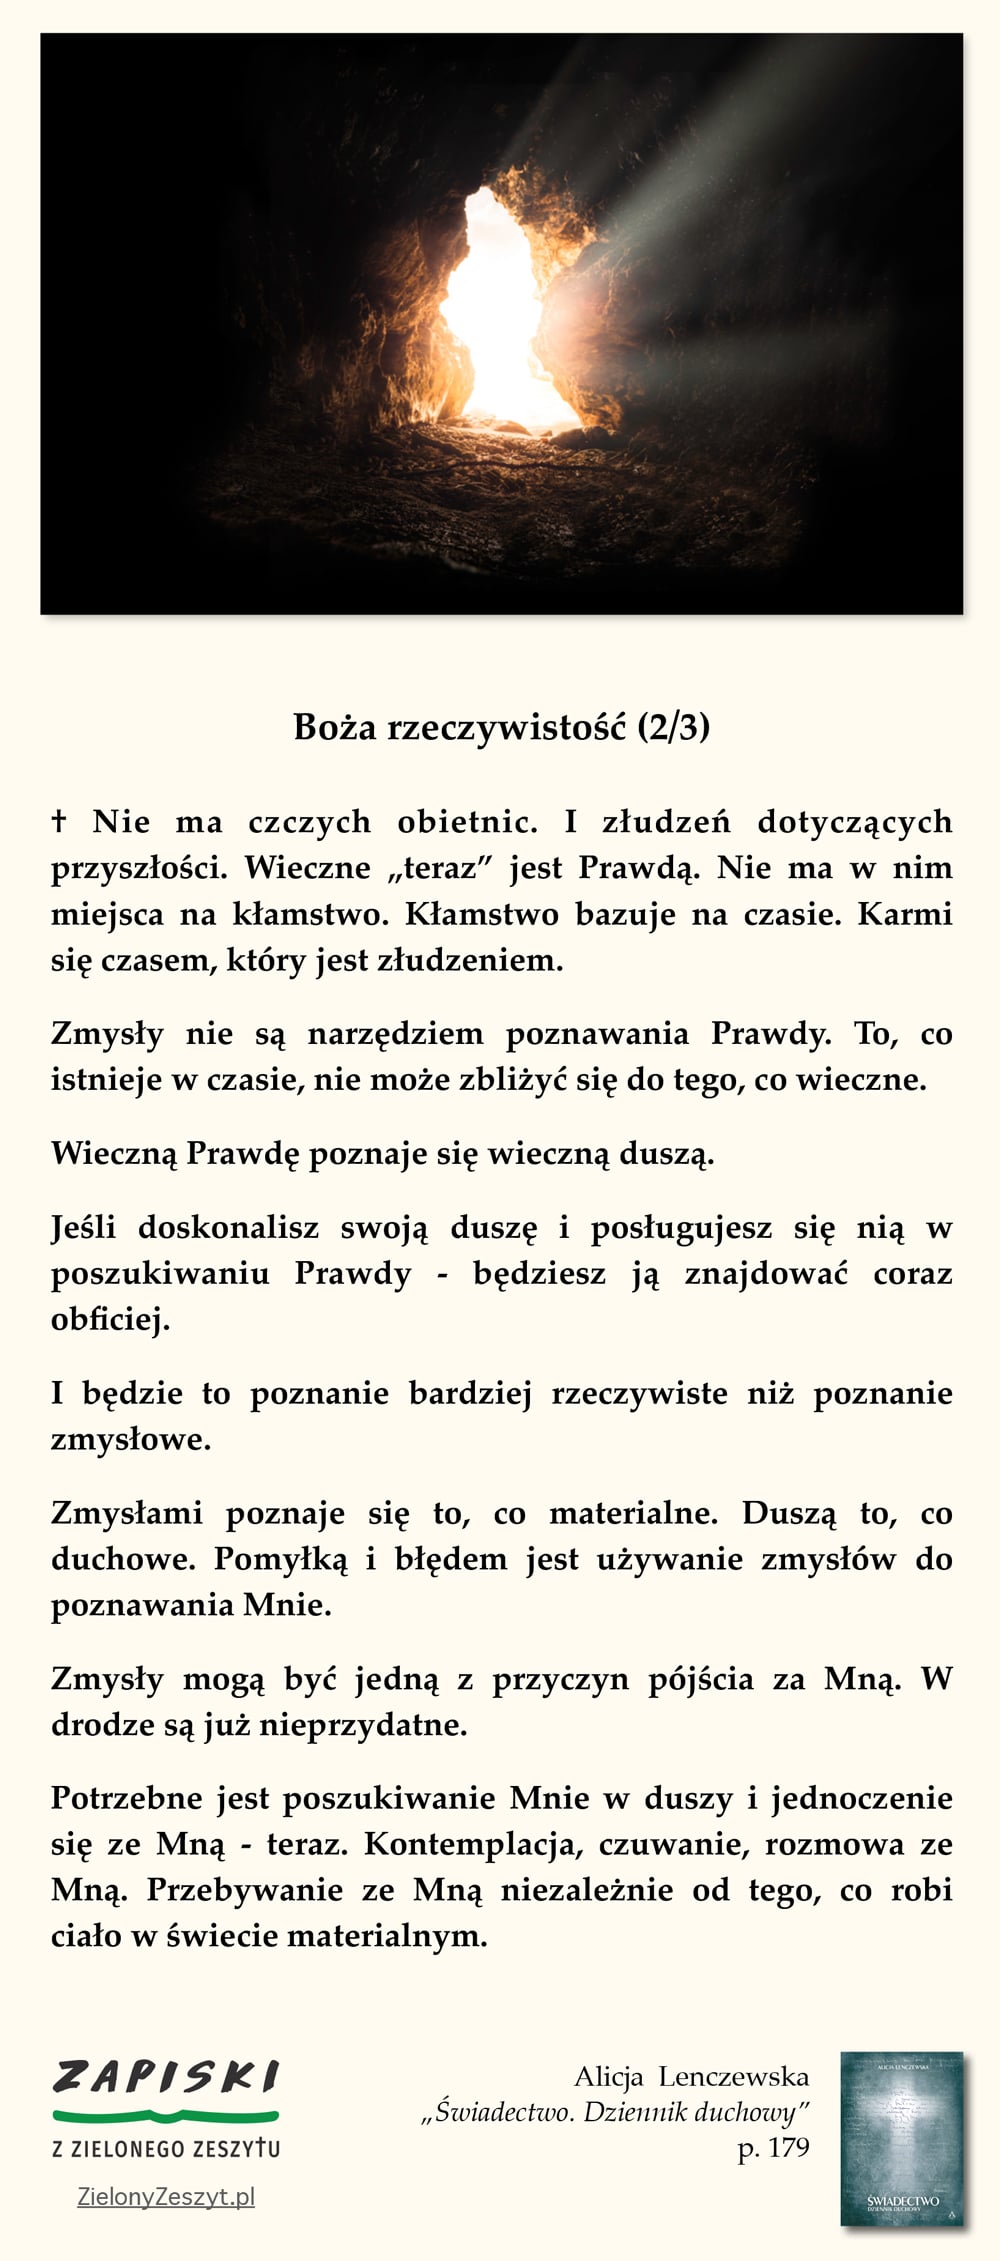 Alicja Lenczewska, "Świadectwo. Dziennik duchowy", p. 179 (Boża rzeczywistość (2/3))